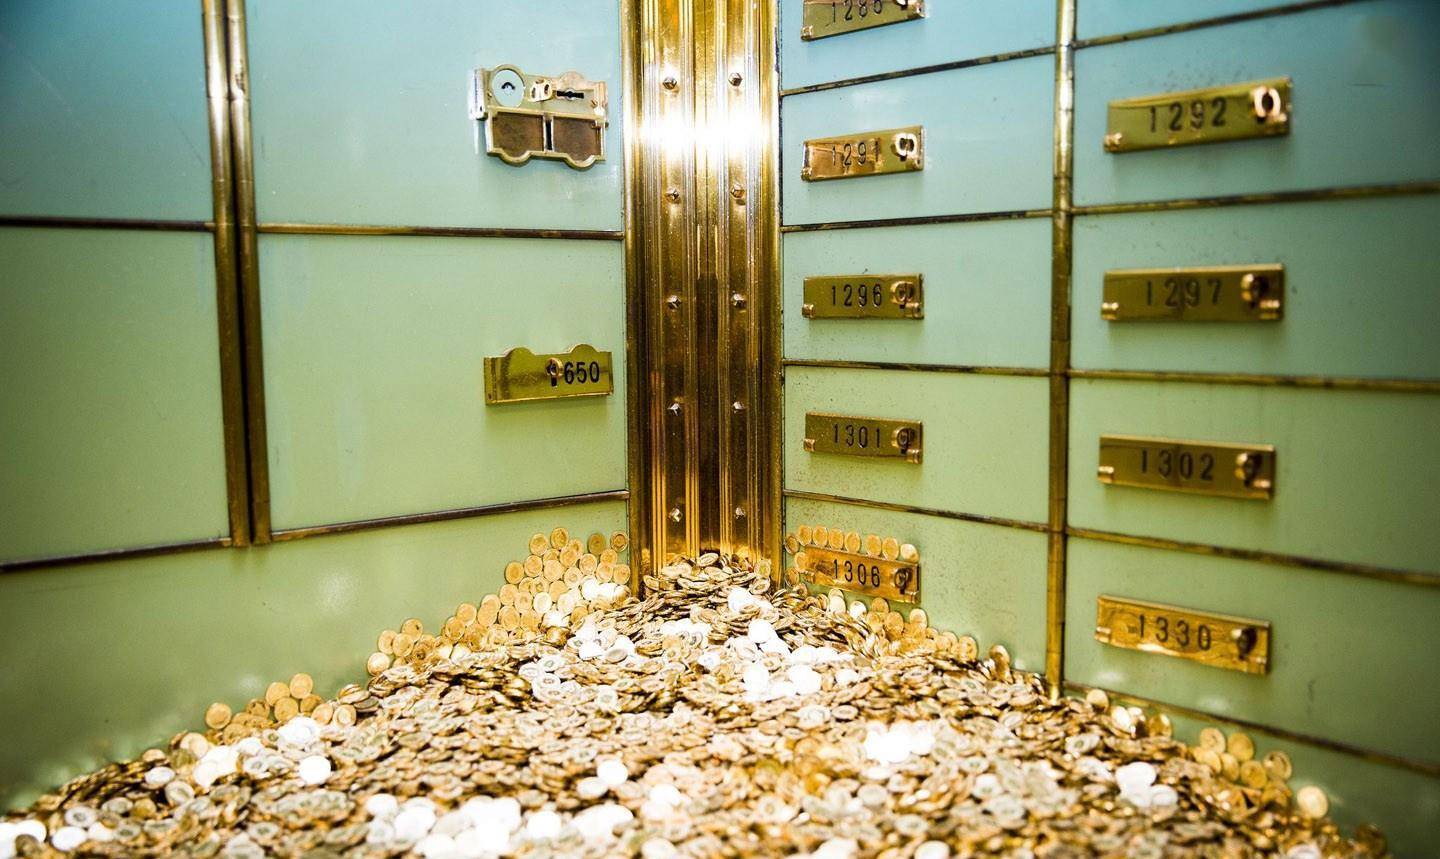 瑞士银行金库虽然美军在萨达姆多座行宫中获取了不少财物,但萨达姆